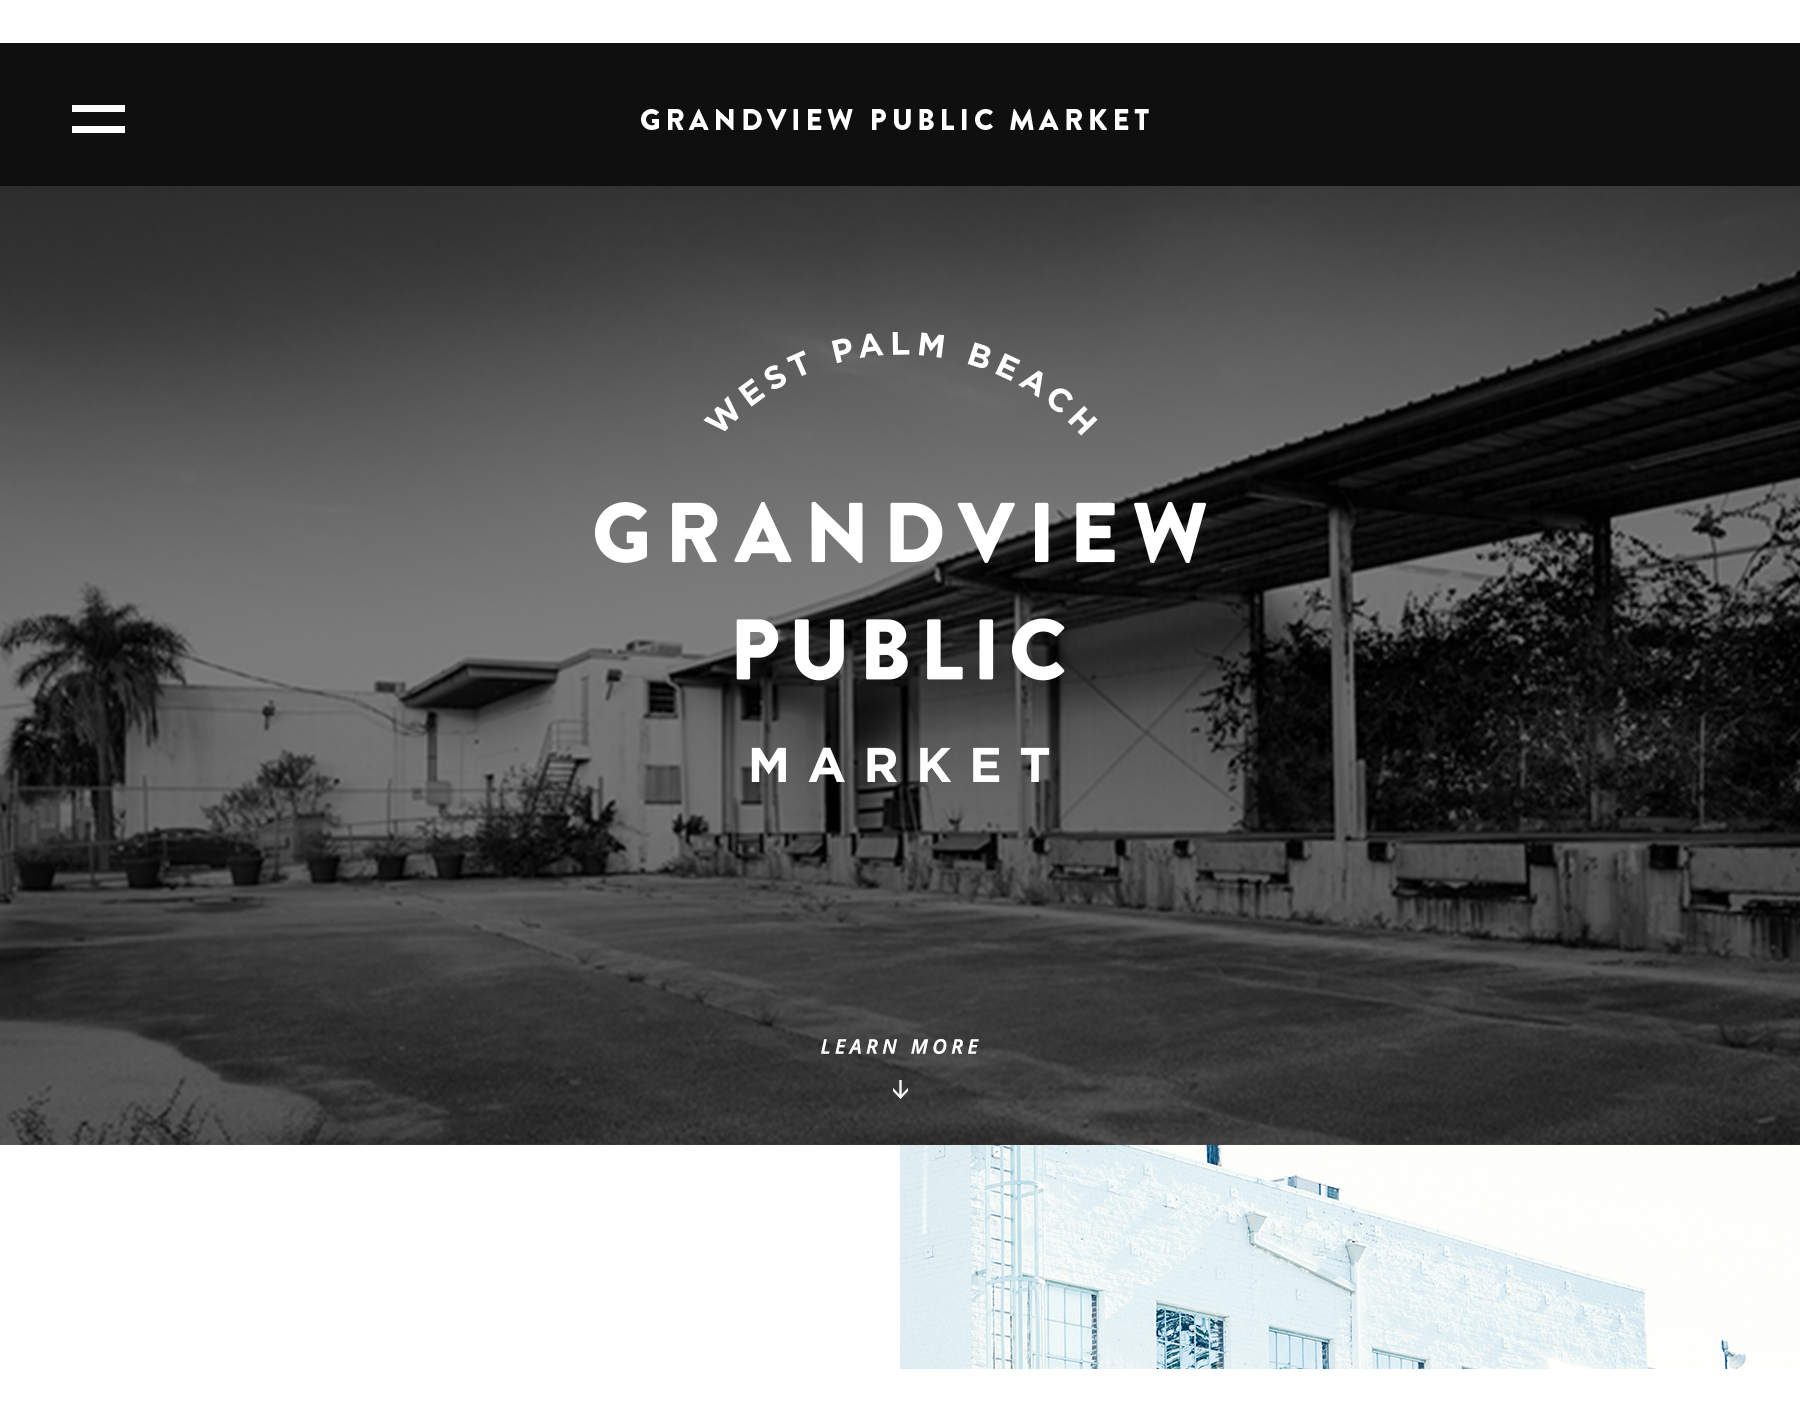 Desktop website mockups for Grandview Public Market, showing off the landing page.